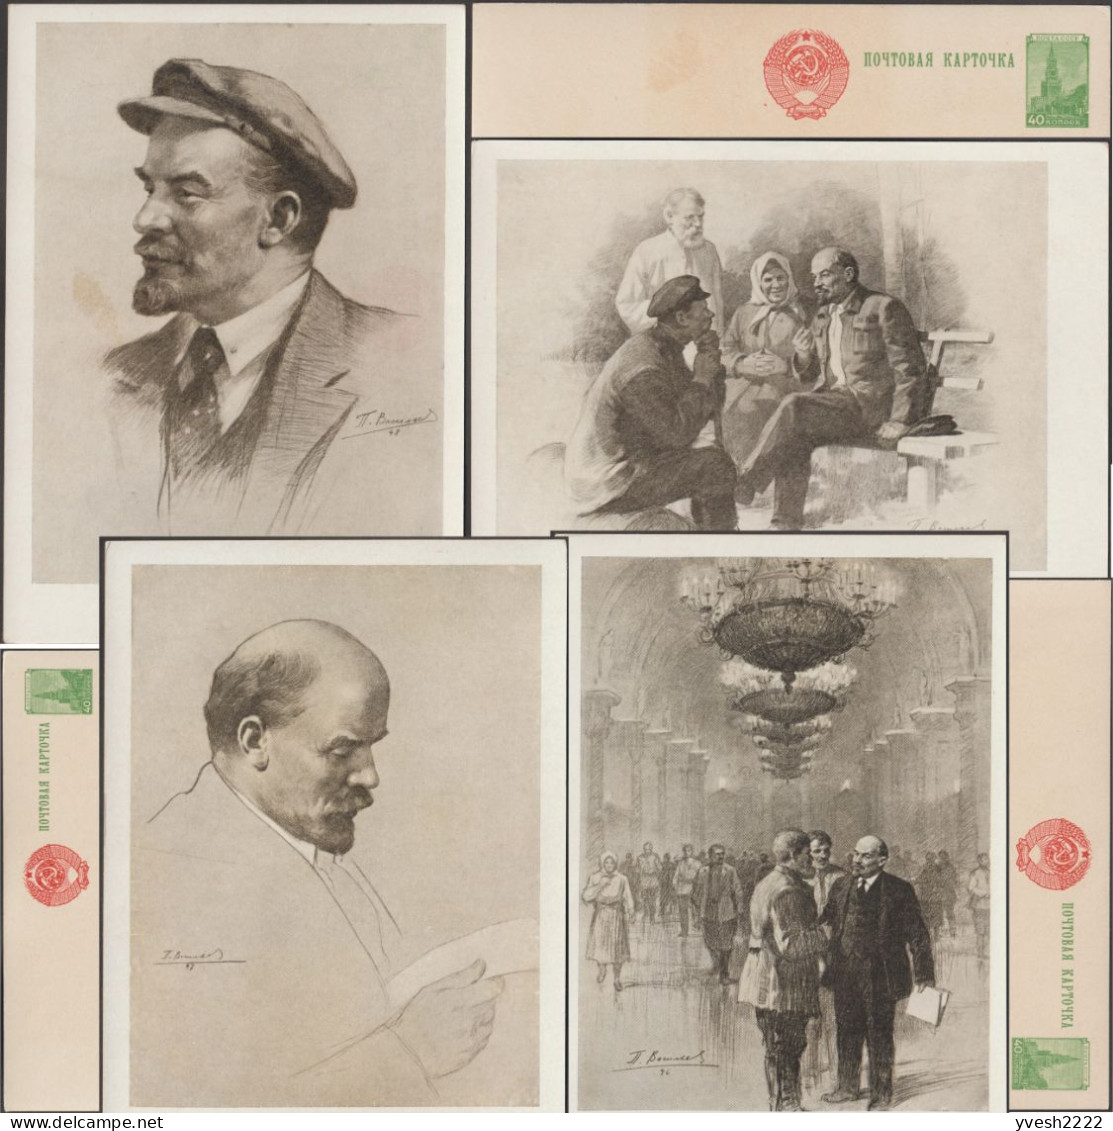 URSS 1957. 4 Entiers Postaux, Portraits De Lénine, Vladimir Ilitch Oulianov, Par Piotr Konstantinovich Vasiliev - Lénine